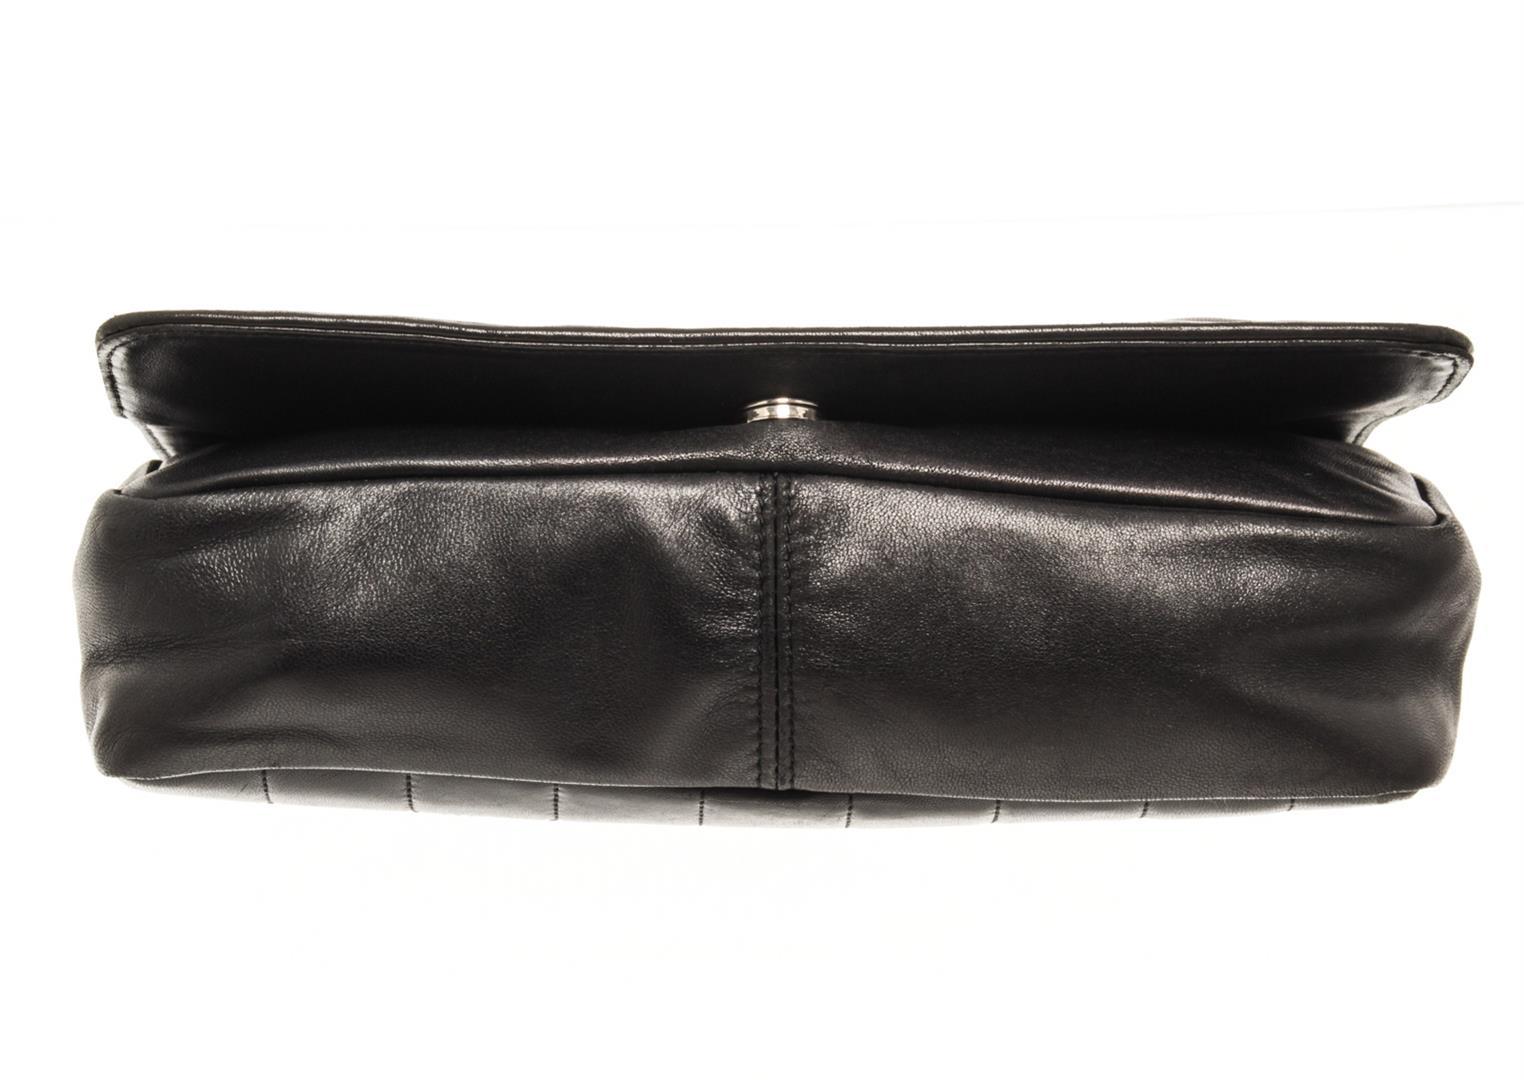 Chanel Black Leather Chocolate Bar Shoulder bag